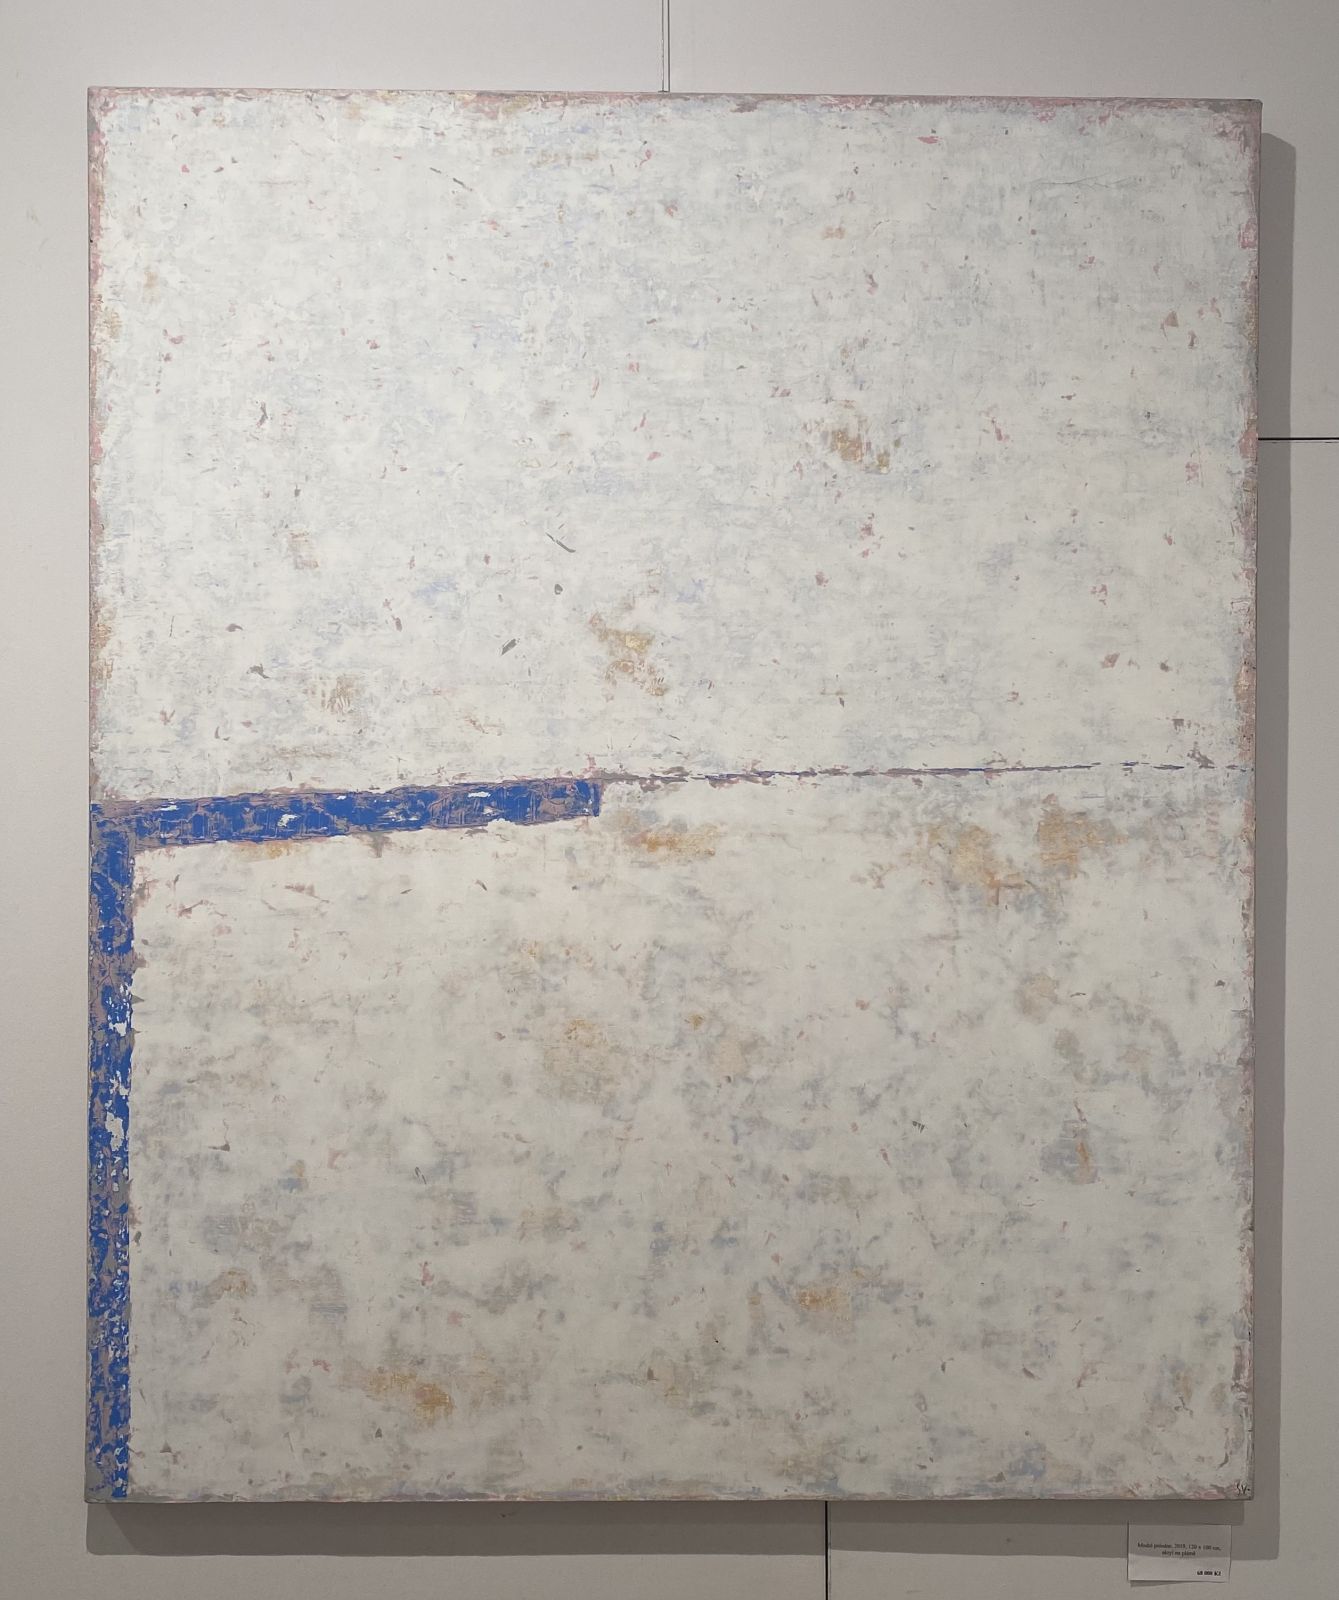 Modré poledne, 2019, 120 x 100 cm, akryl na plátně